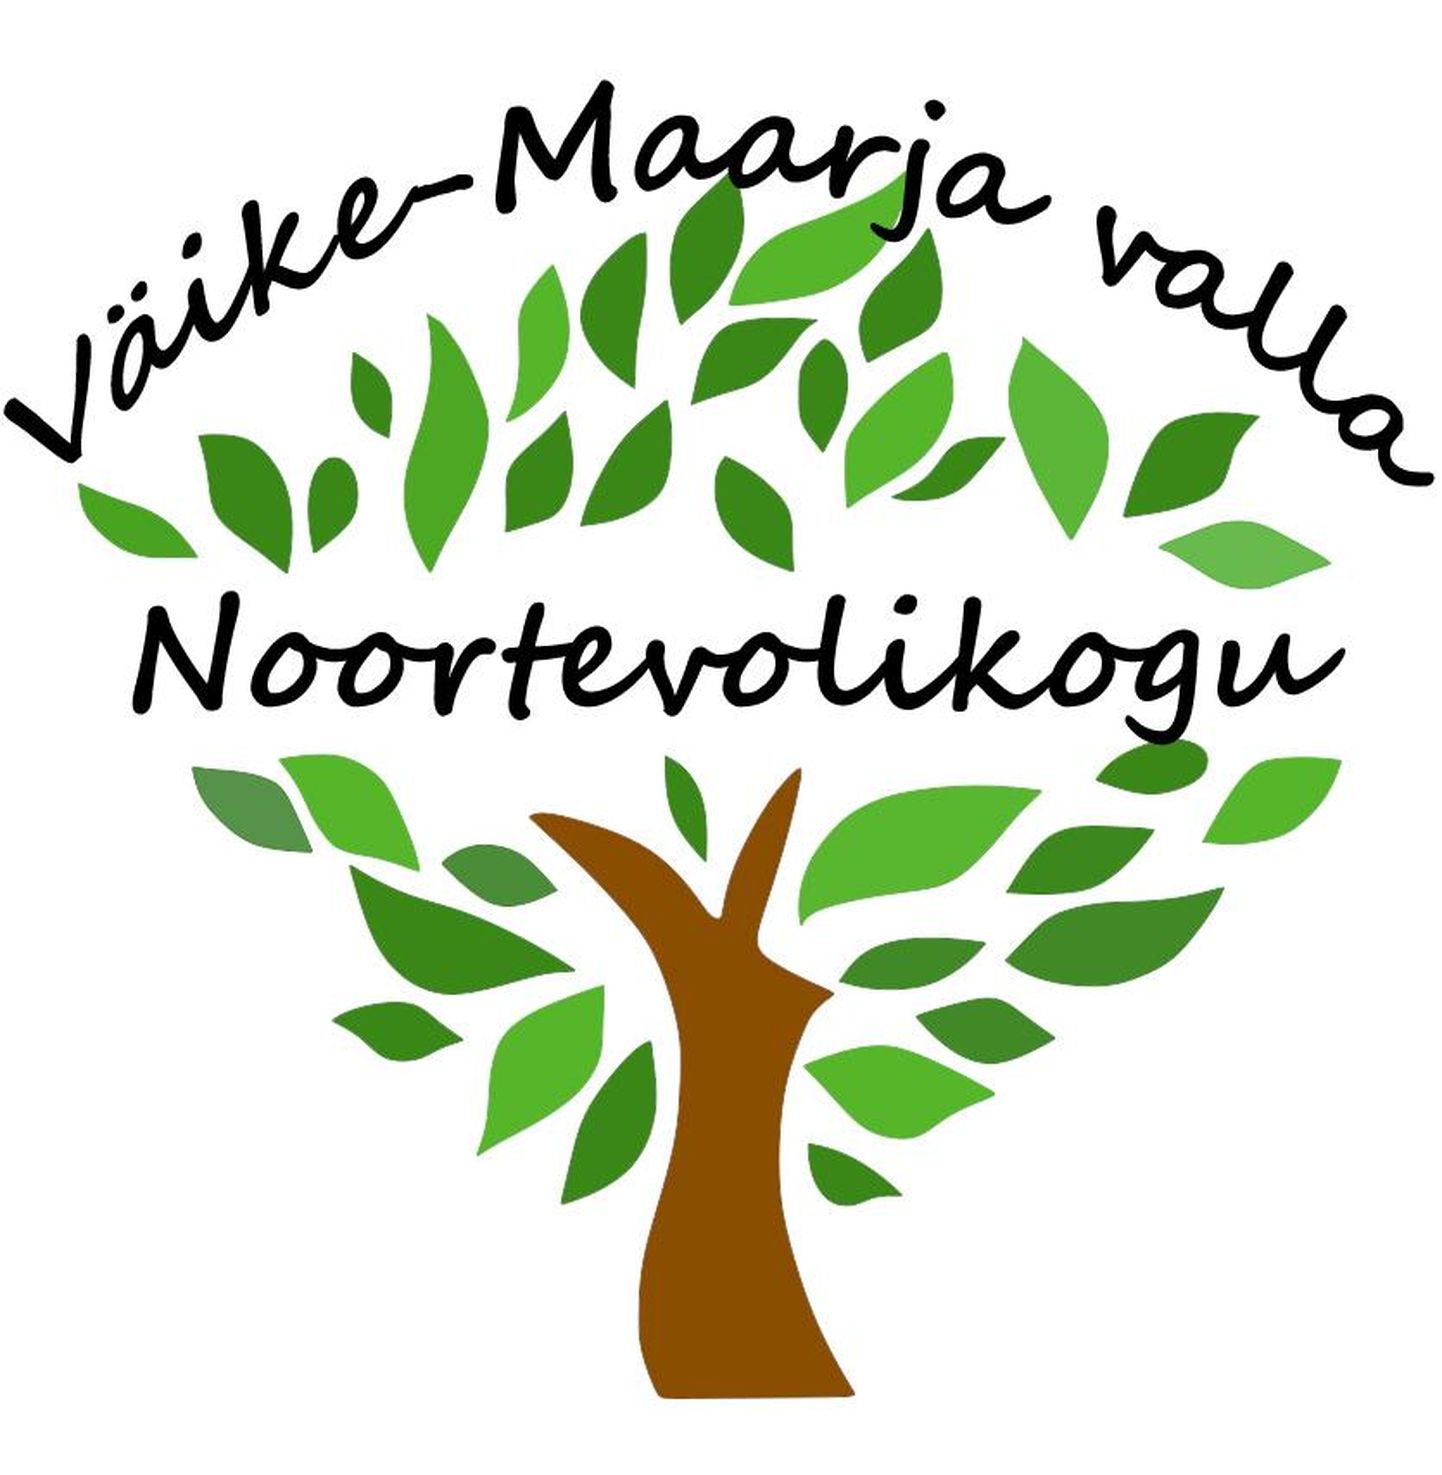 Väike-Maarja valla noortevolikogu logo.